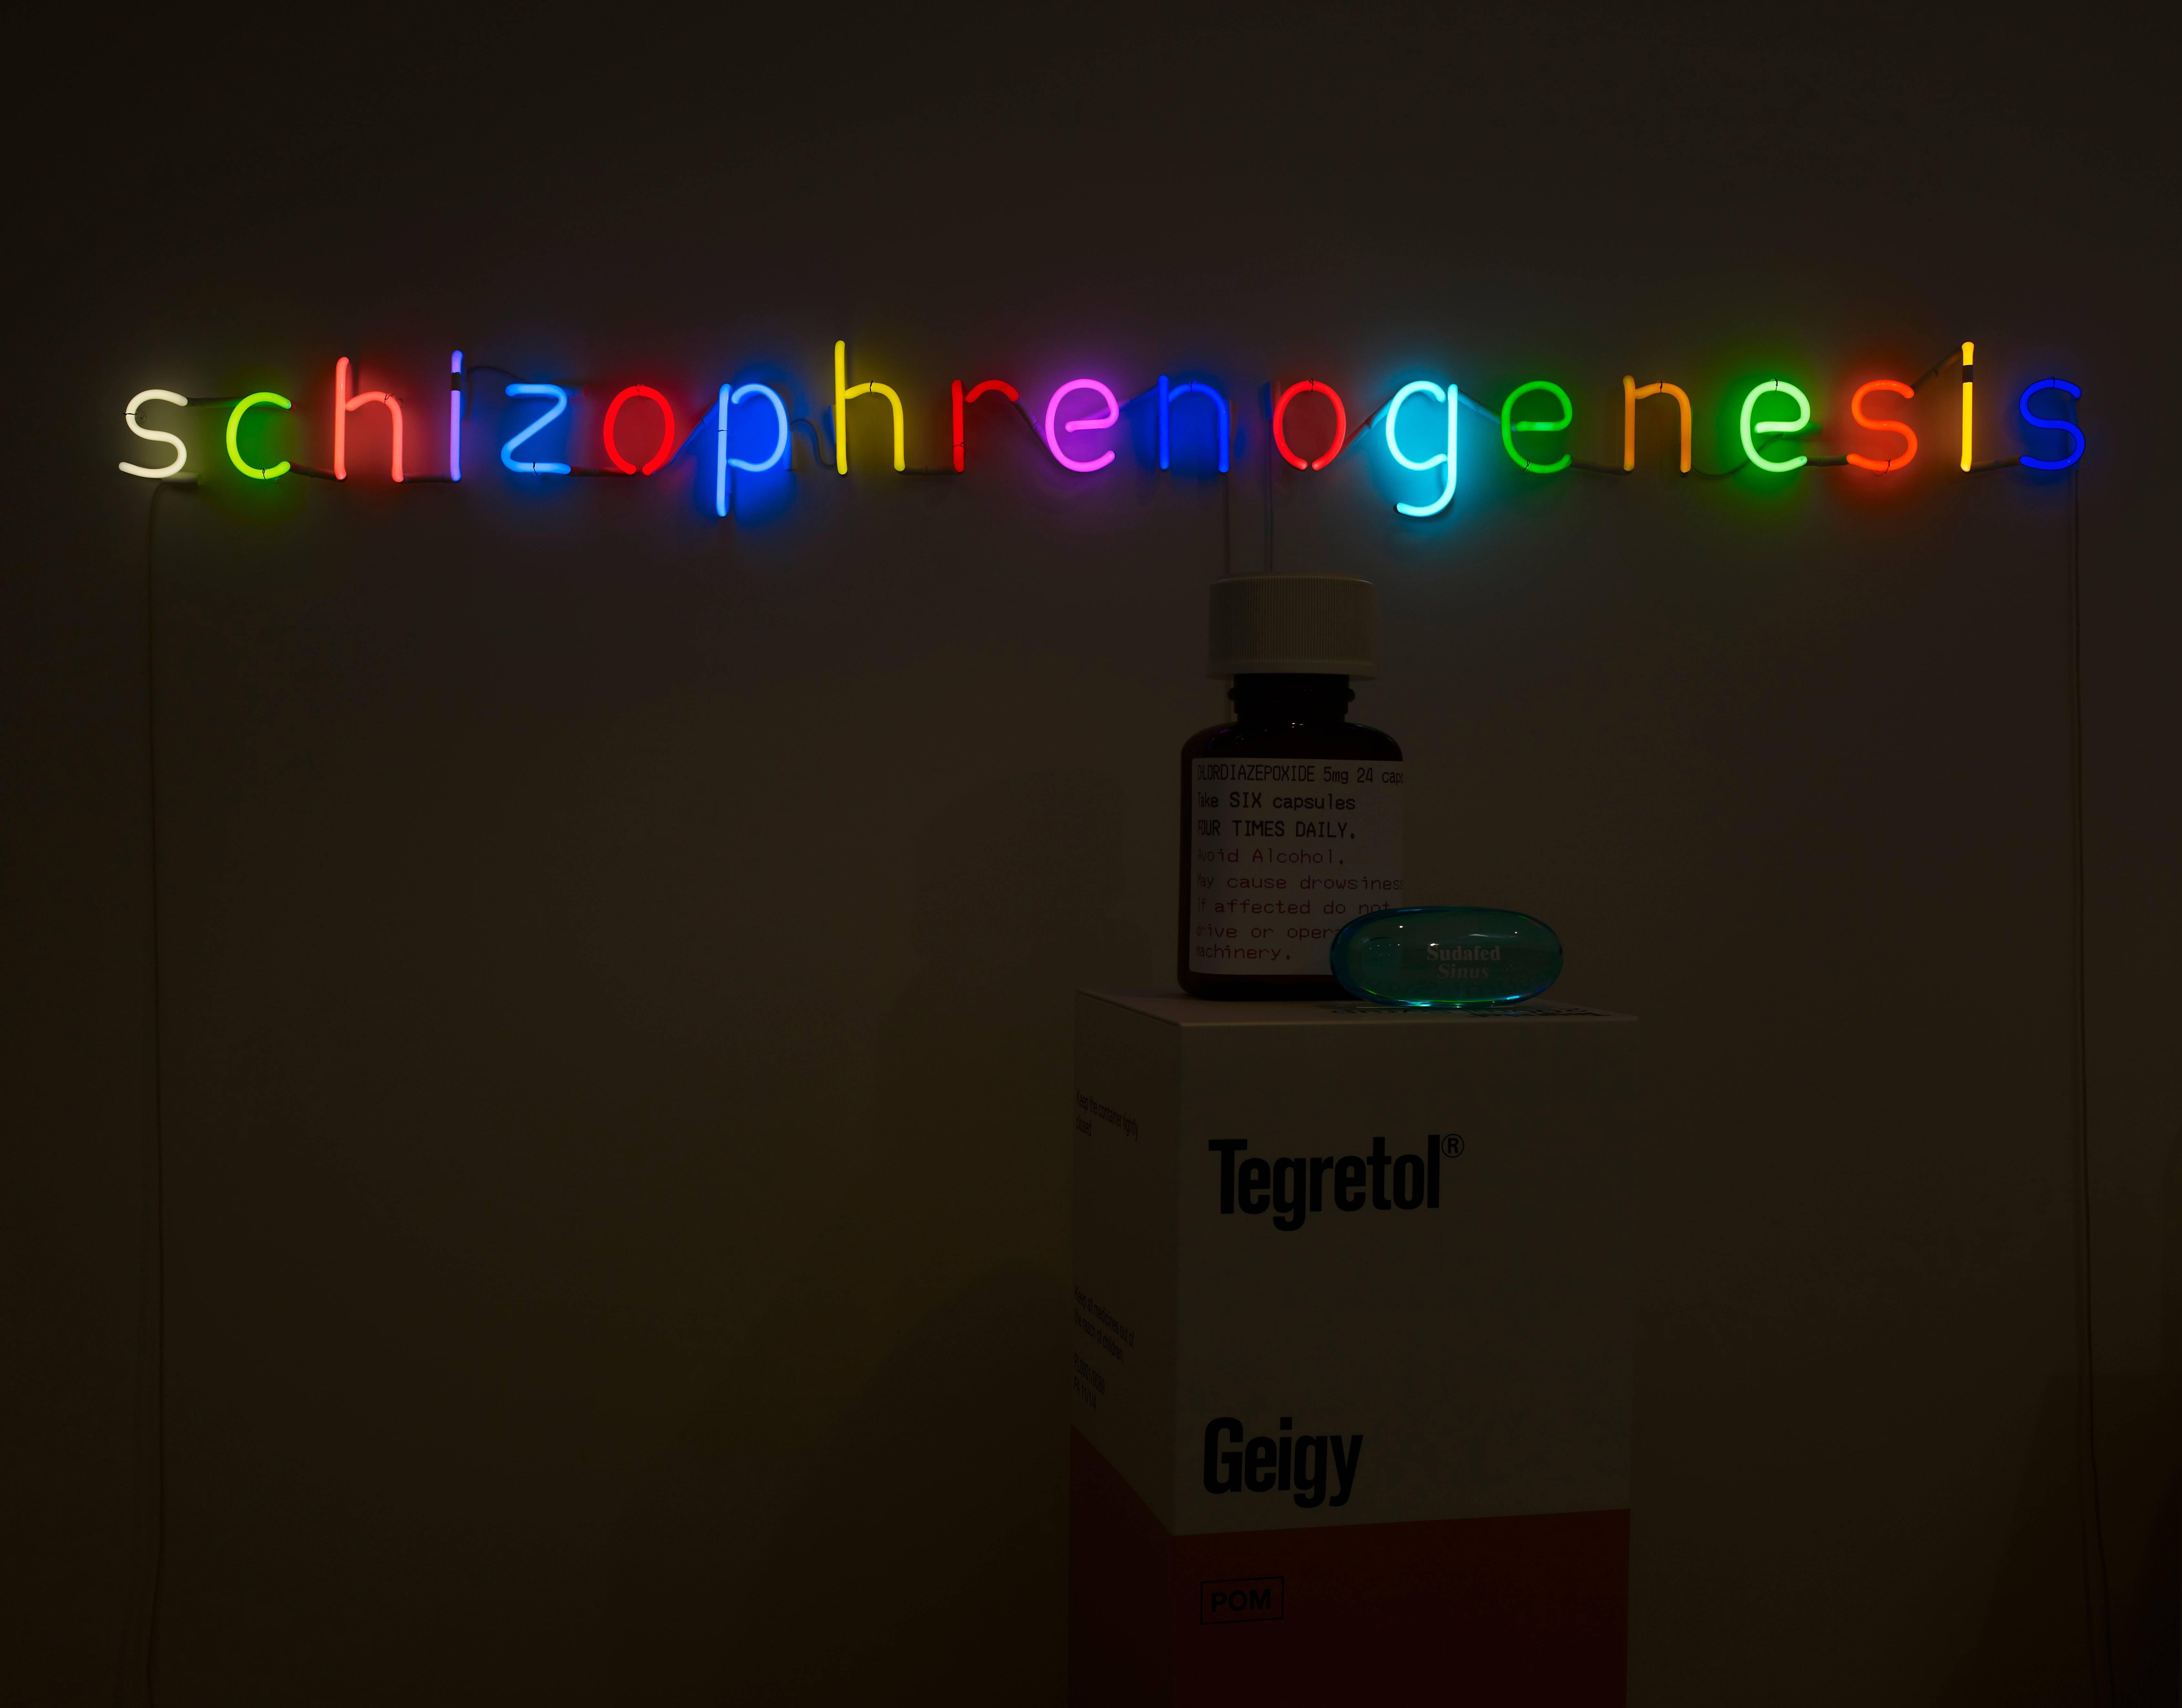 Schizophrenogenesis - Mixed Media Art by Damien Hirst